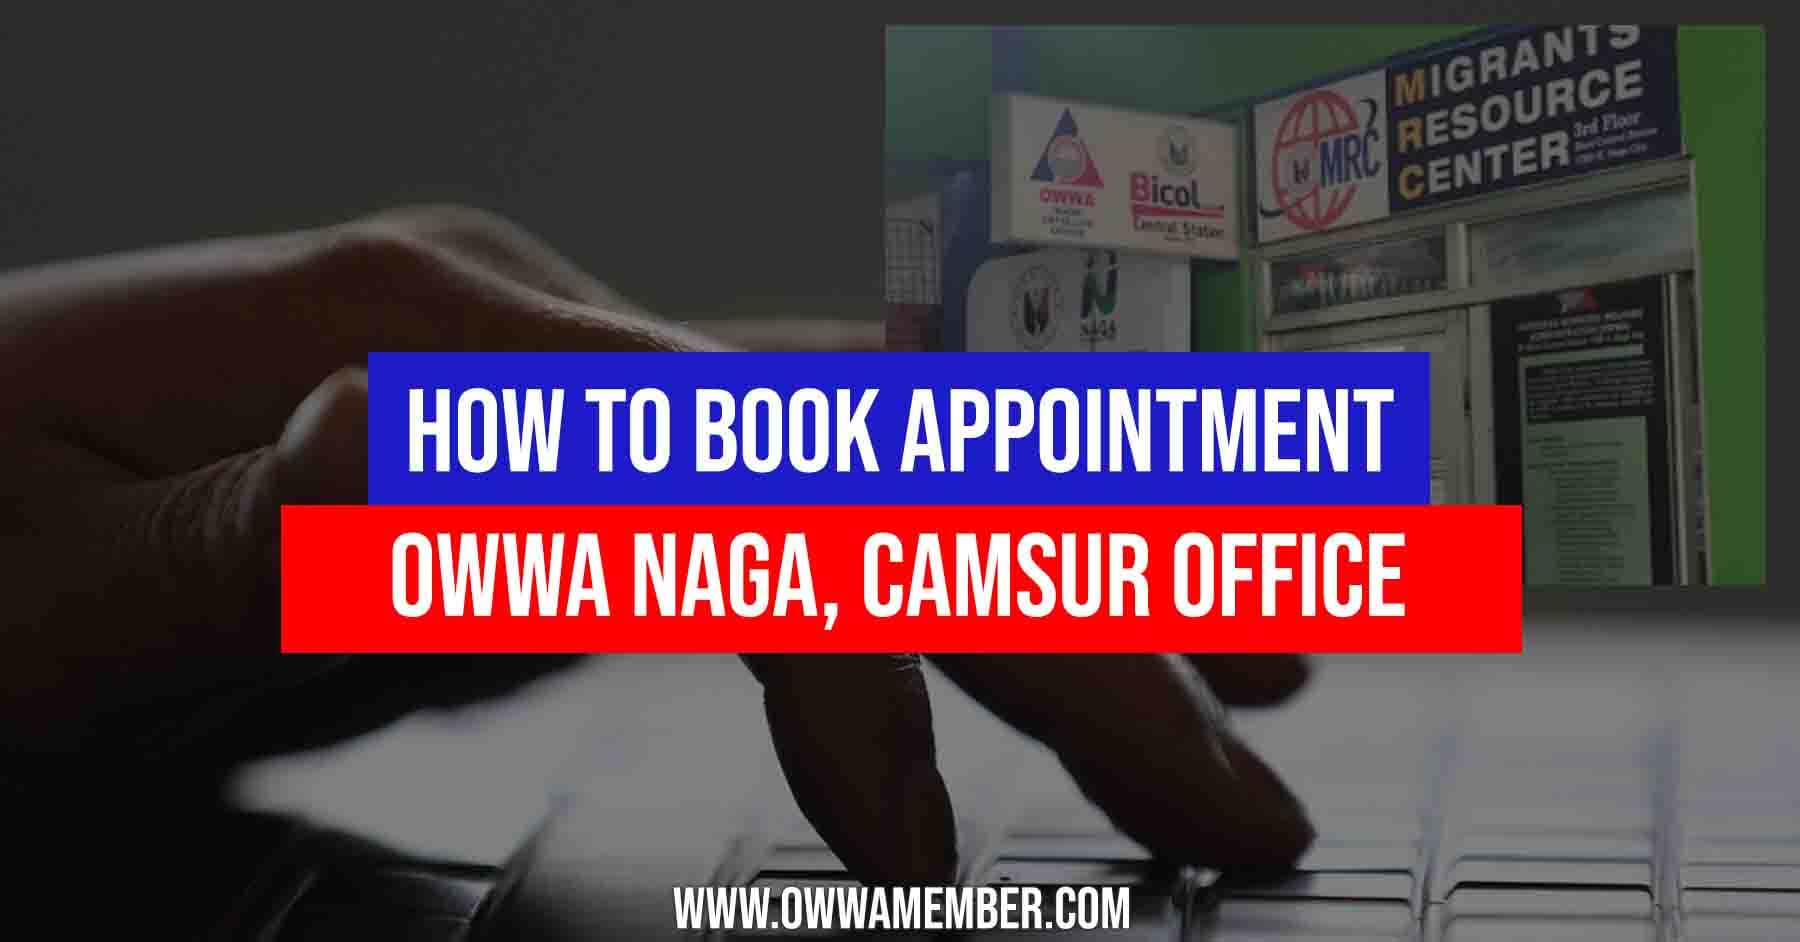 renew owwa membership in owwa naga camsur office